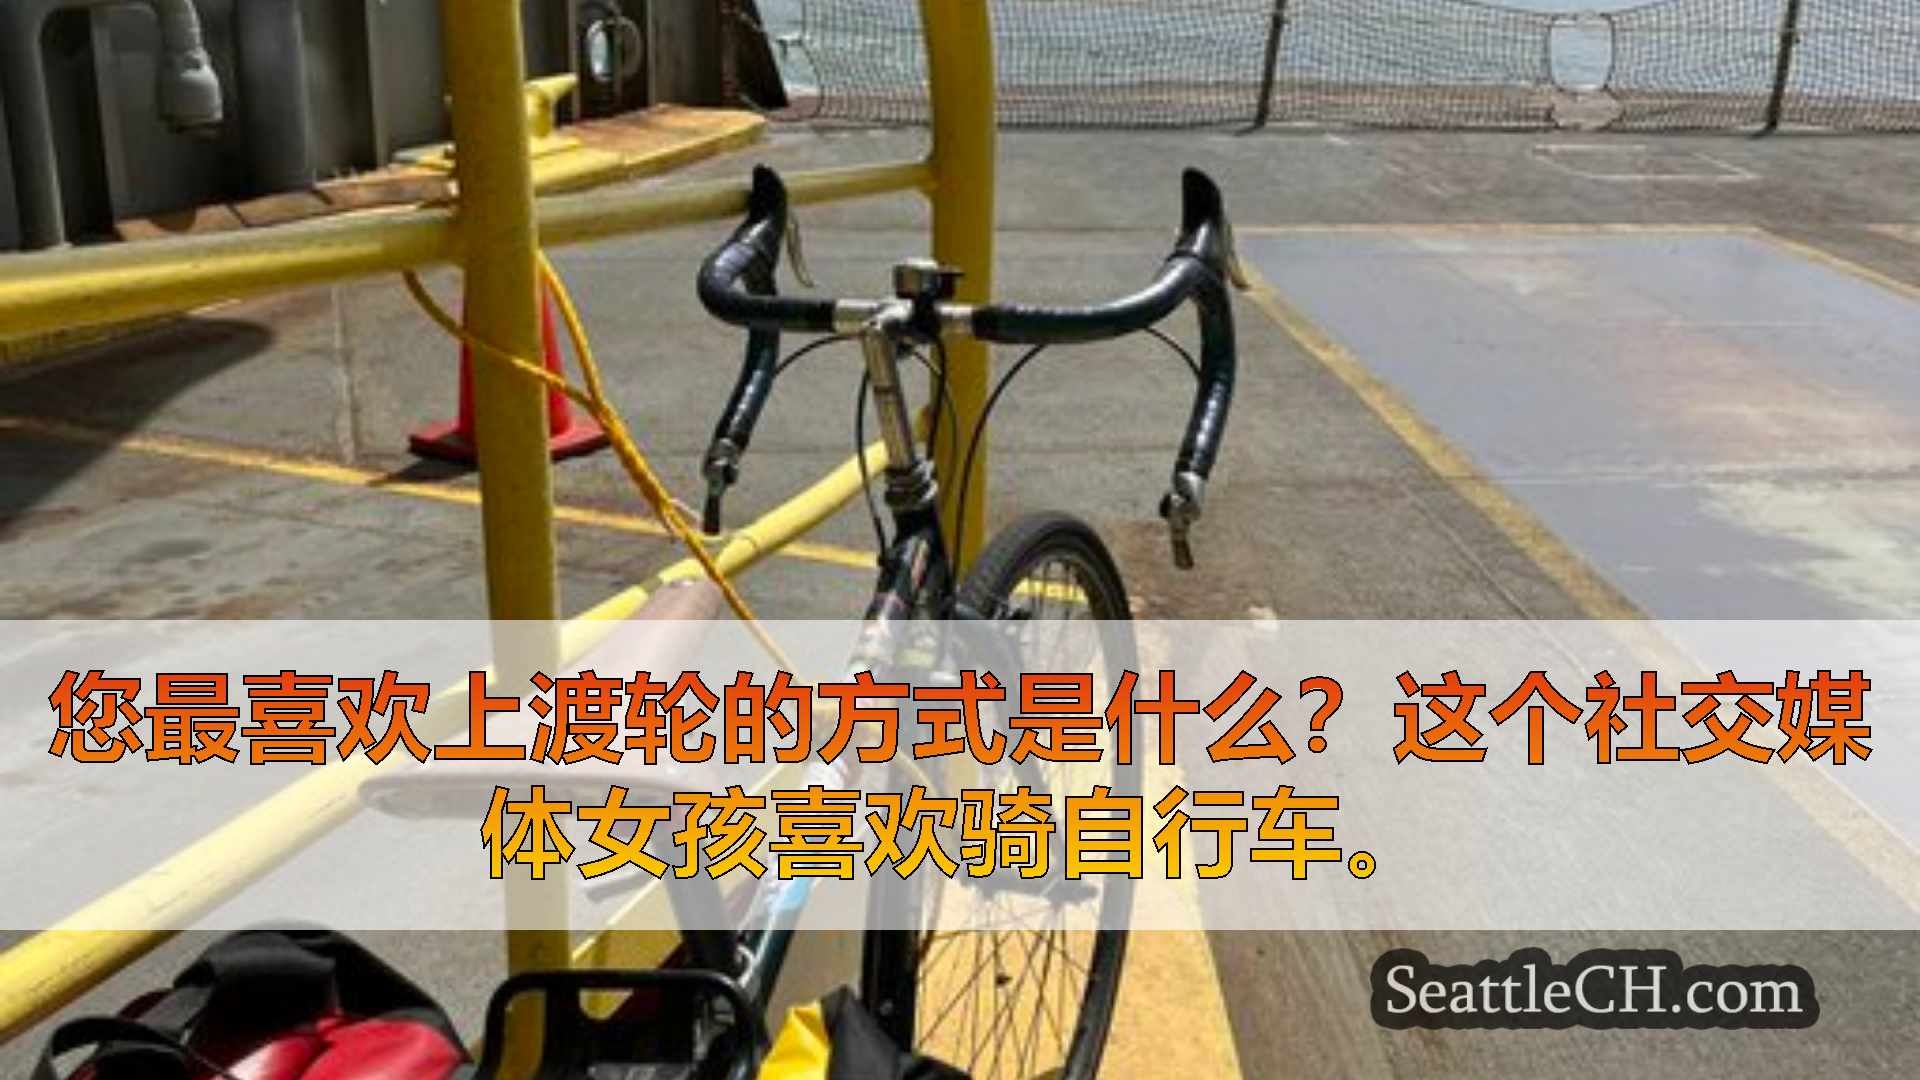 西雅图渡轮新闻 您最喜欢上渡轮的方式是什么？这个社交媒体女孩喜欢骑自行车。